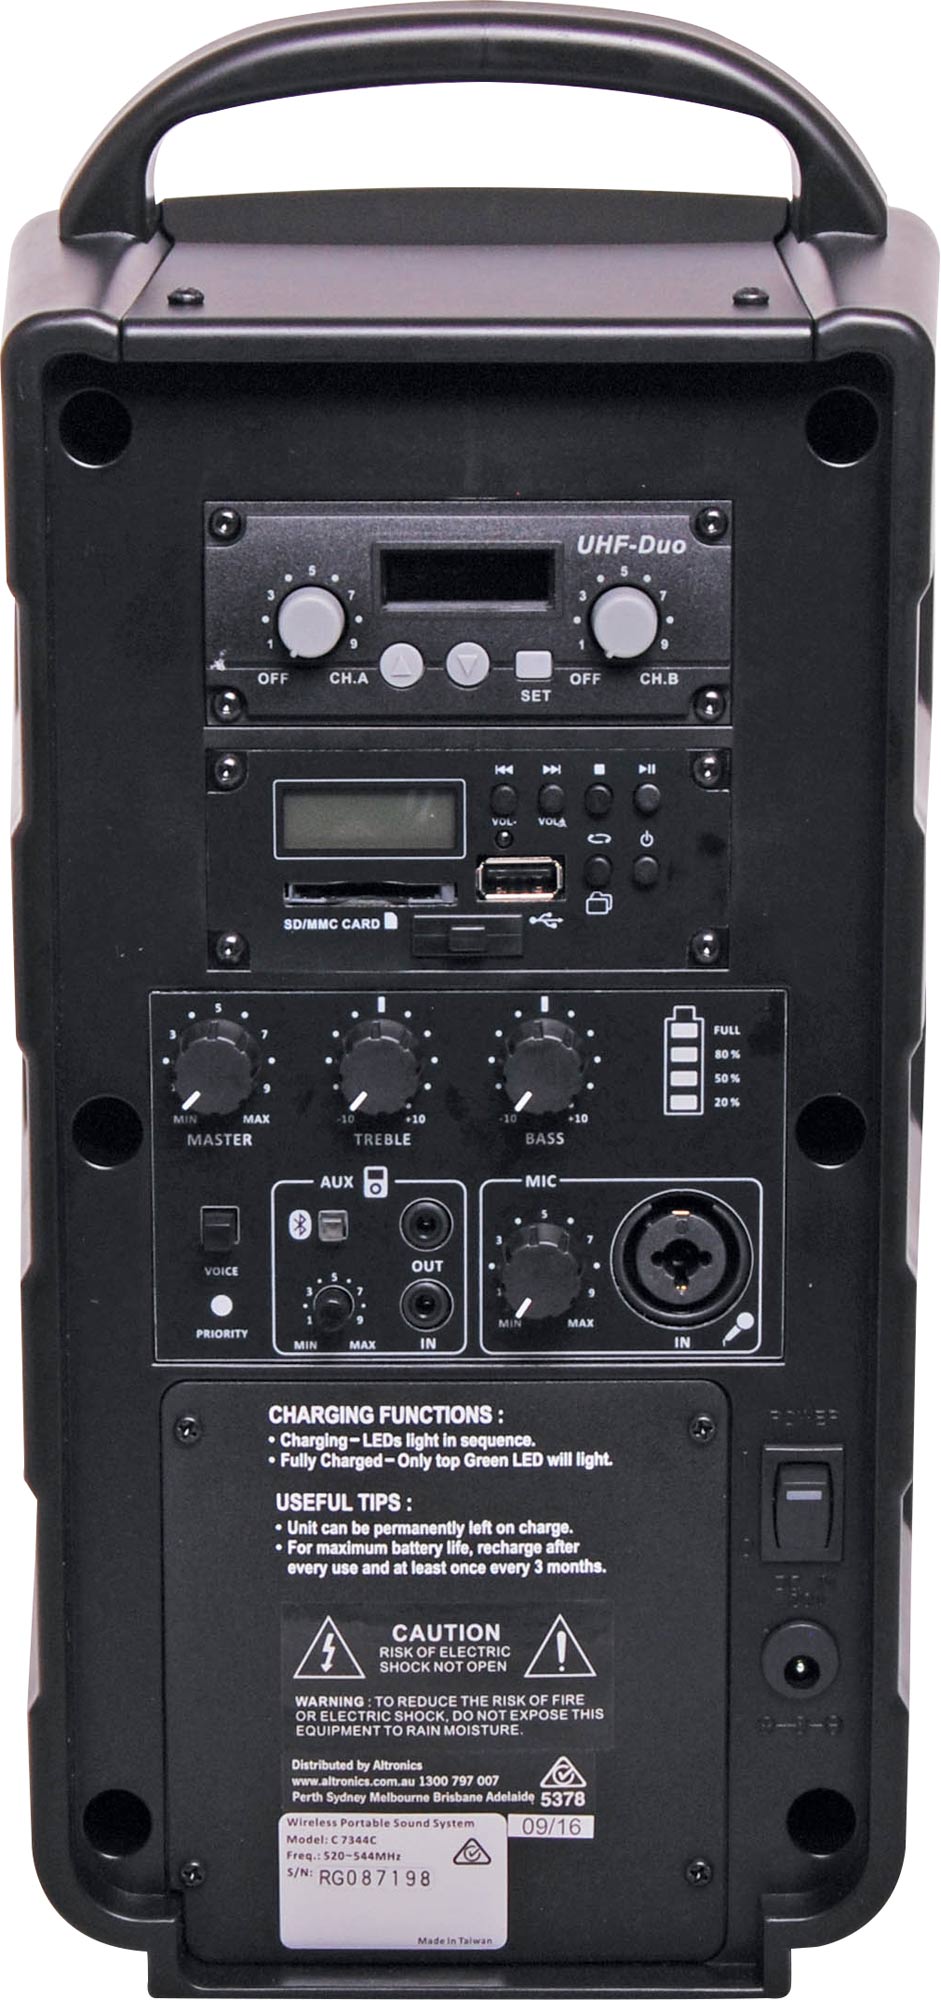 OKAYO 40W Portable USB MP3 520-544MHz UHF Wireless PA System